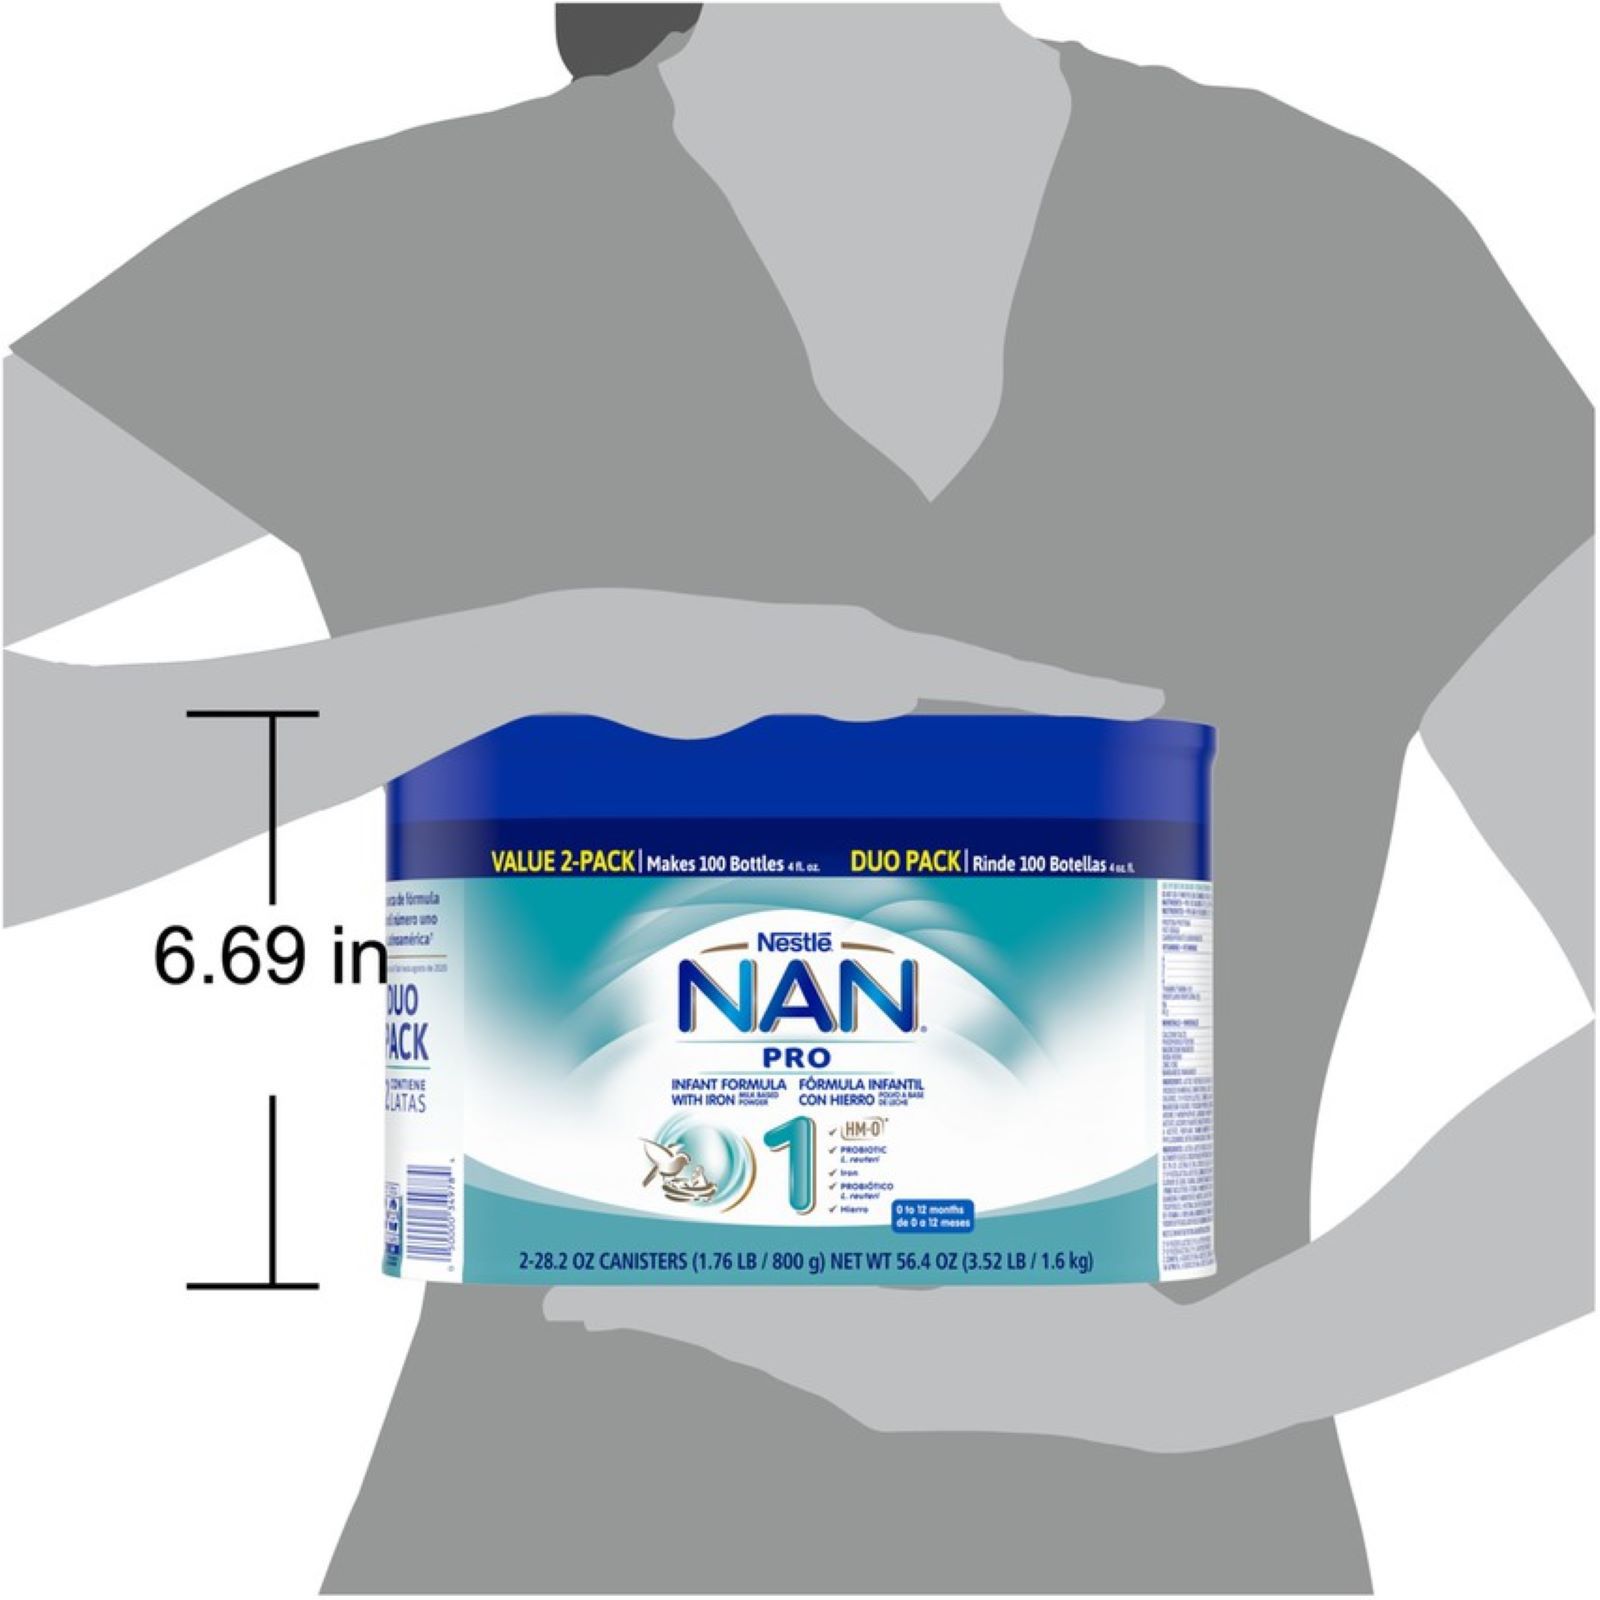 NAN Supreme Pro 1 Nestlè 300ml - Loreto Pharmacy